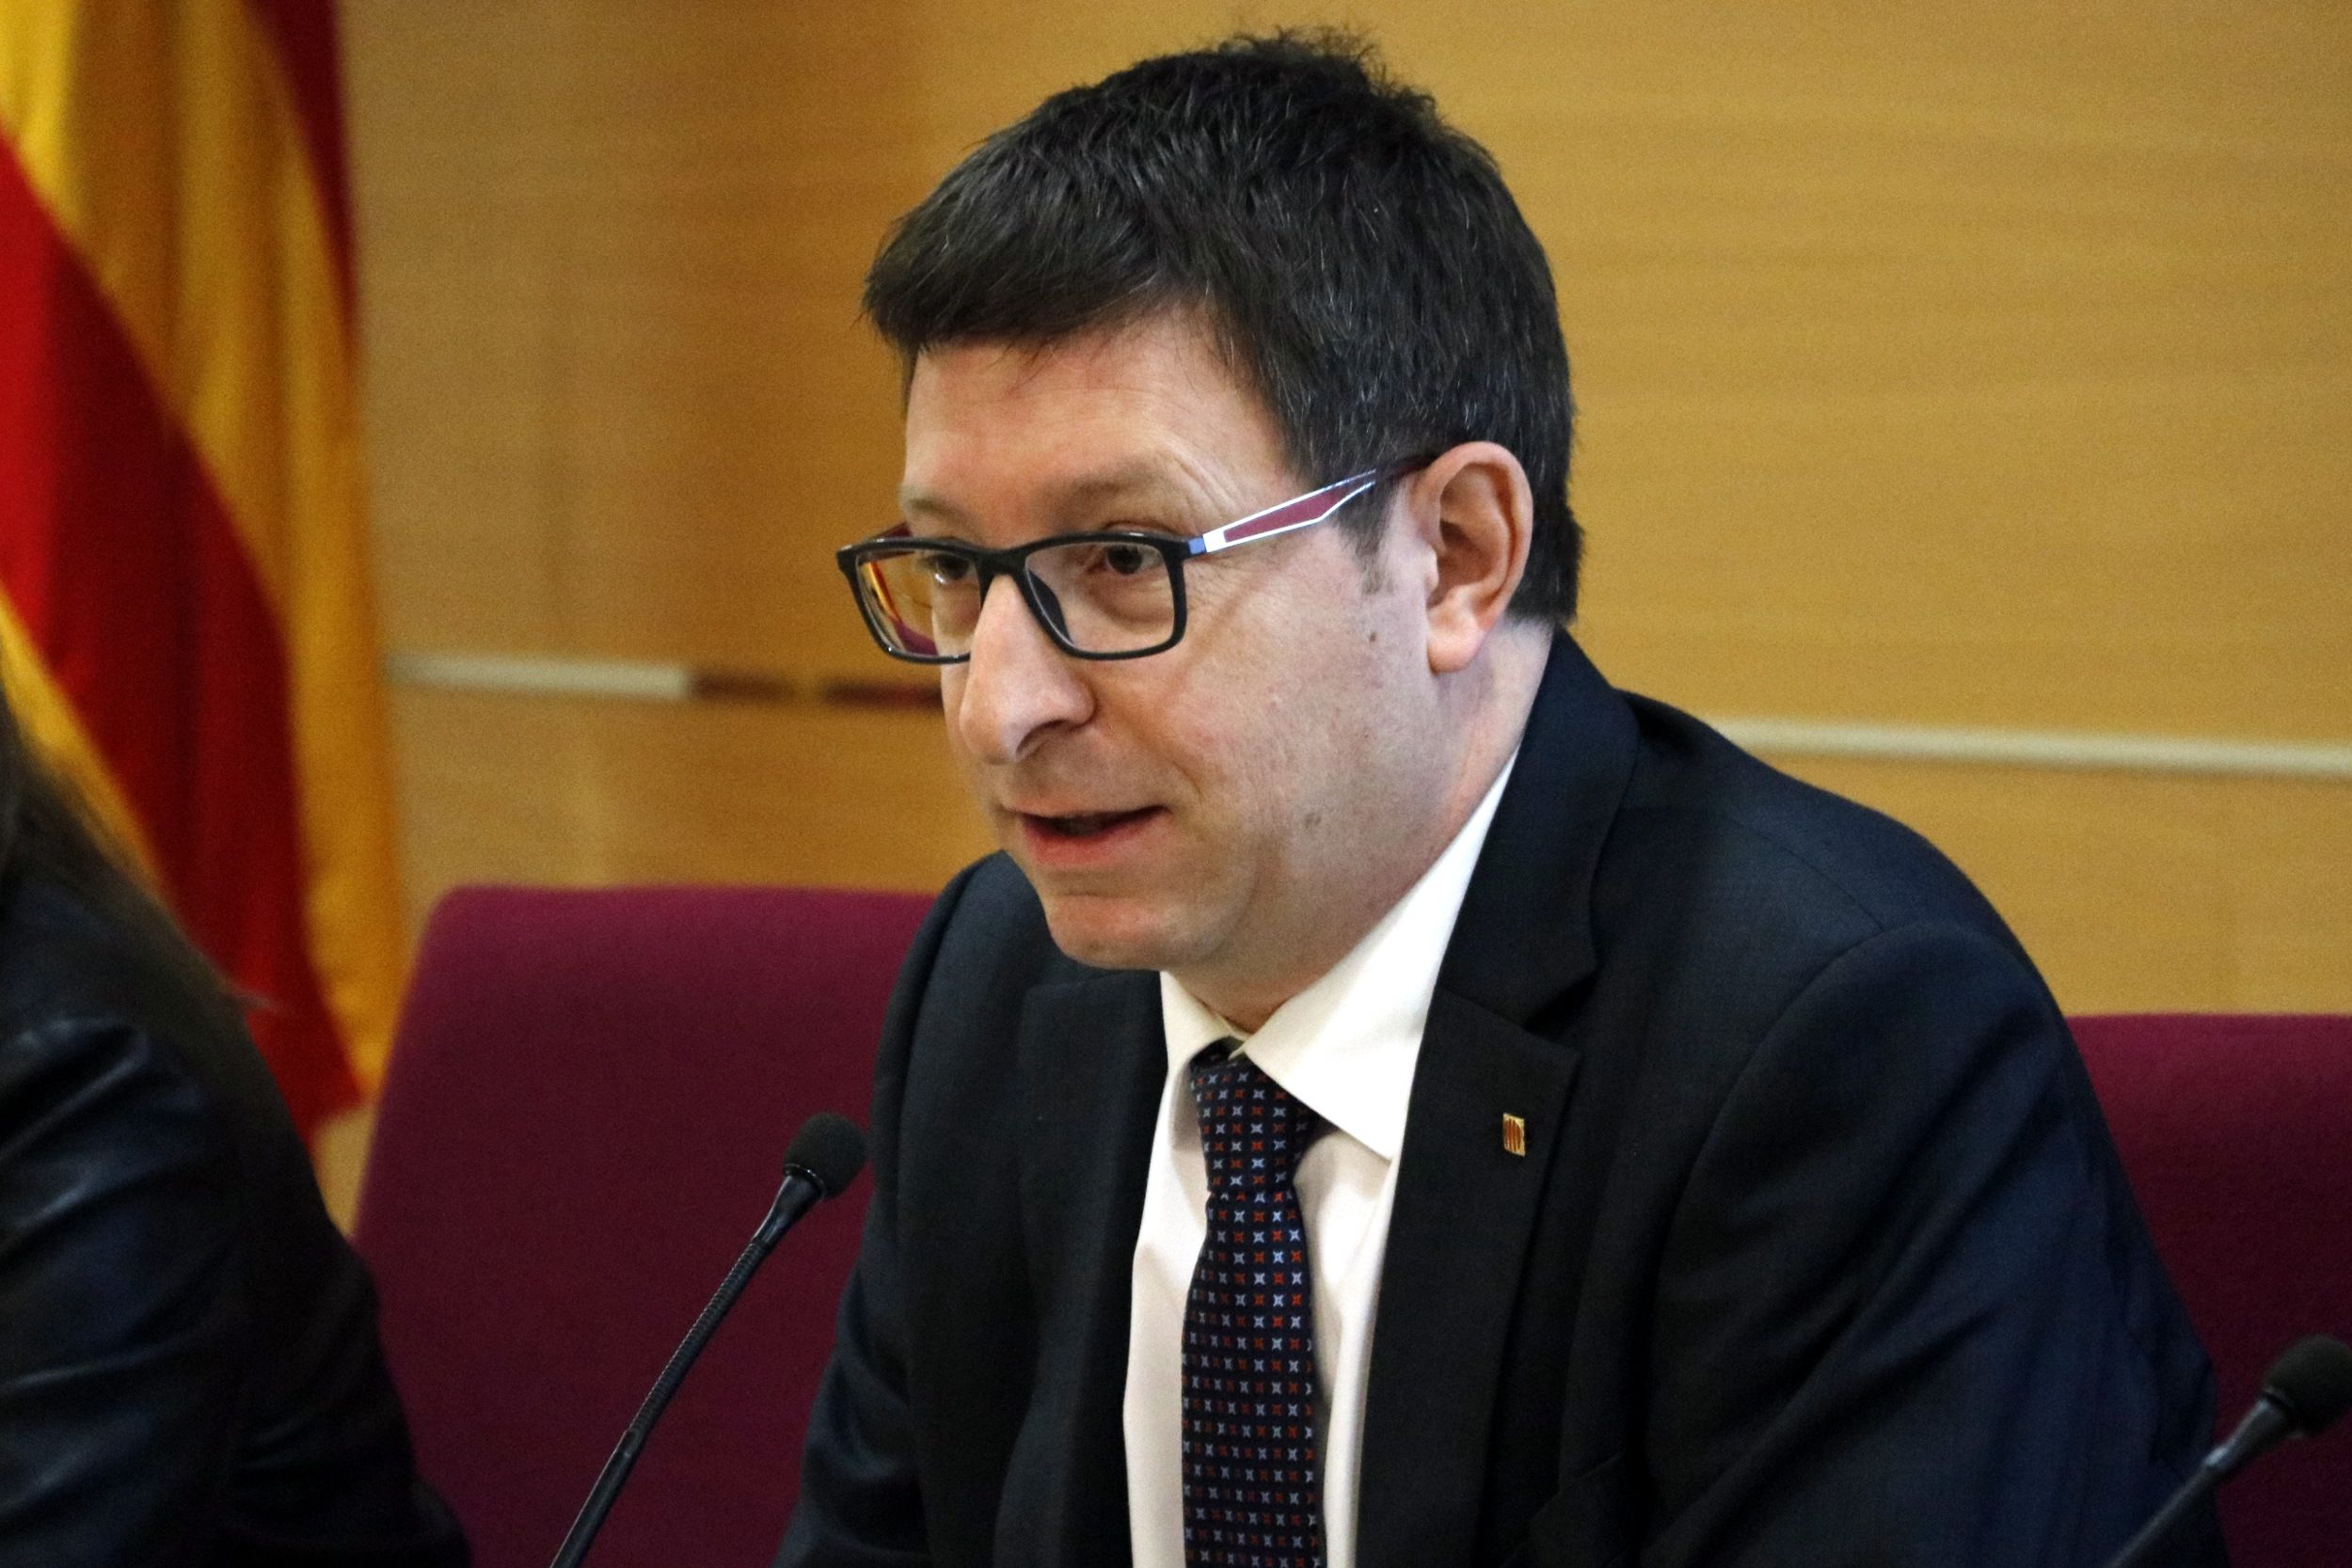 Juristes catalans adverteixen al conseller Mundó que fora de la llei no hi ha democràcia